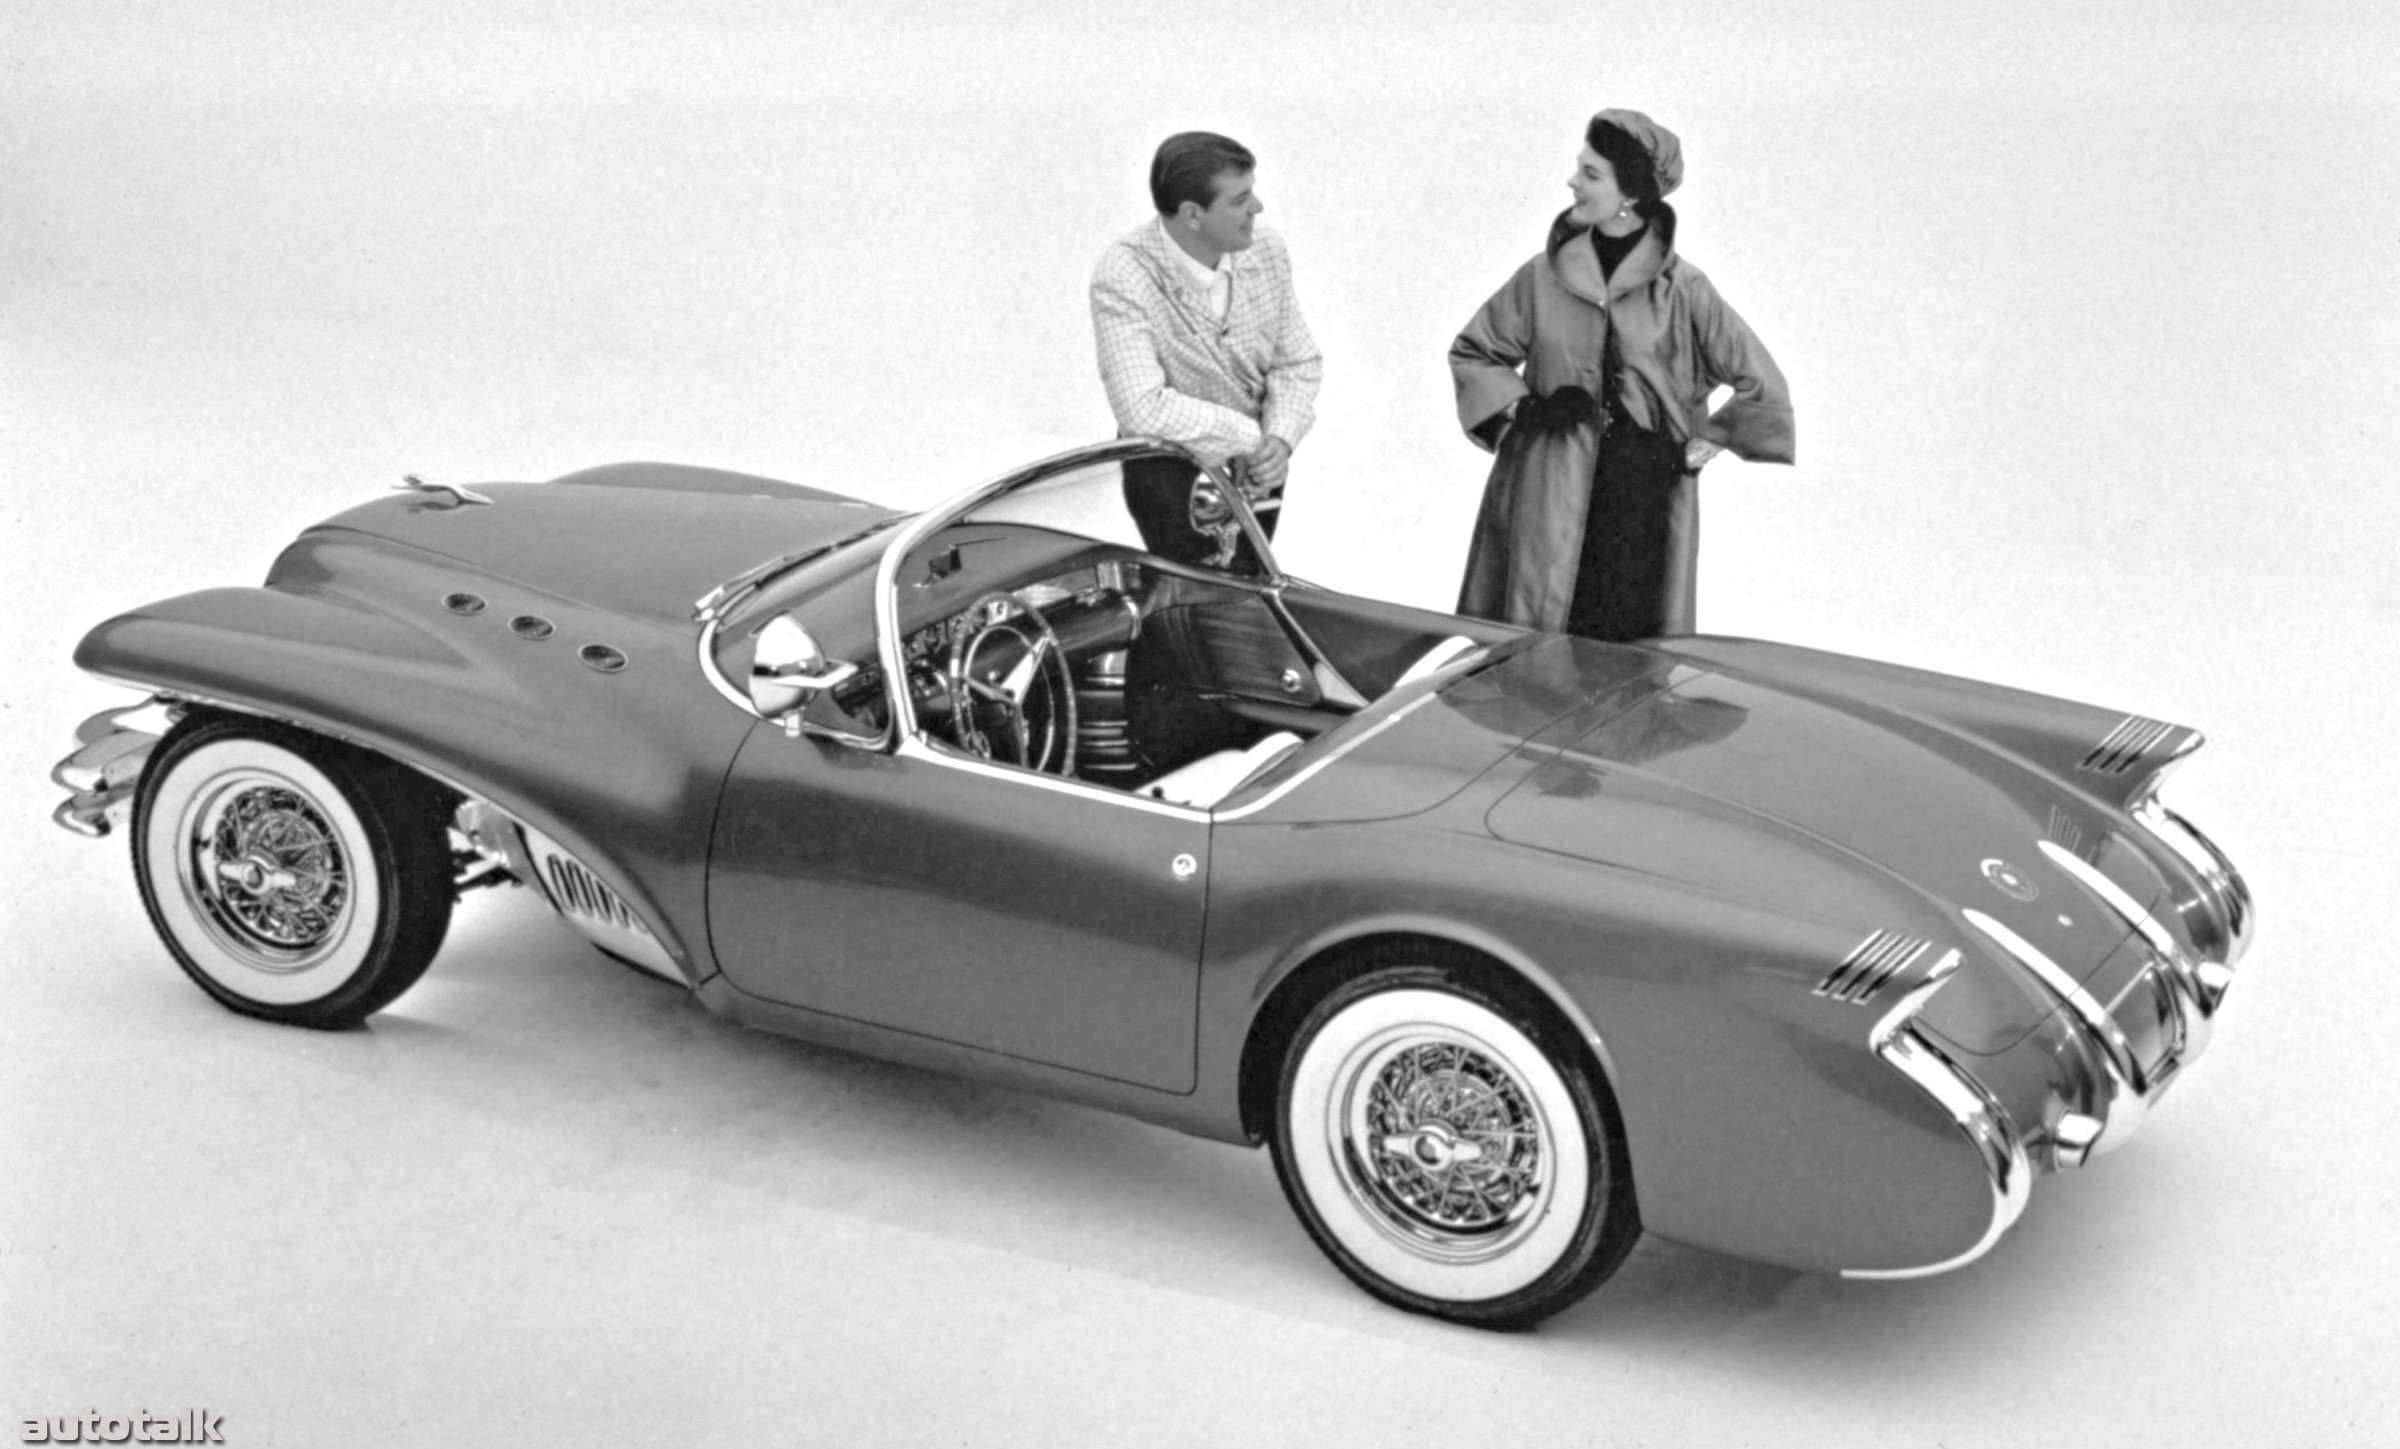 1954 Buick Wildcat